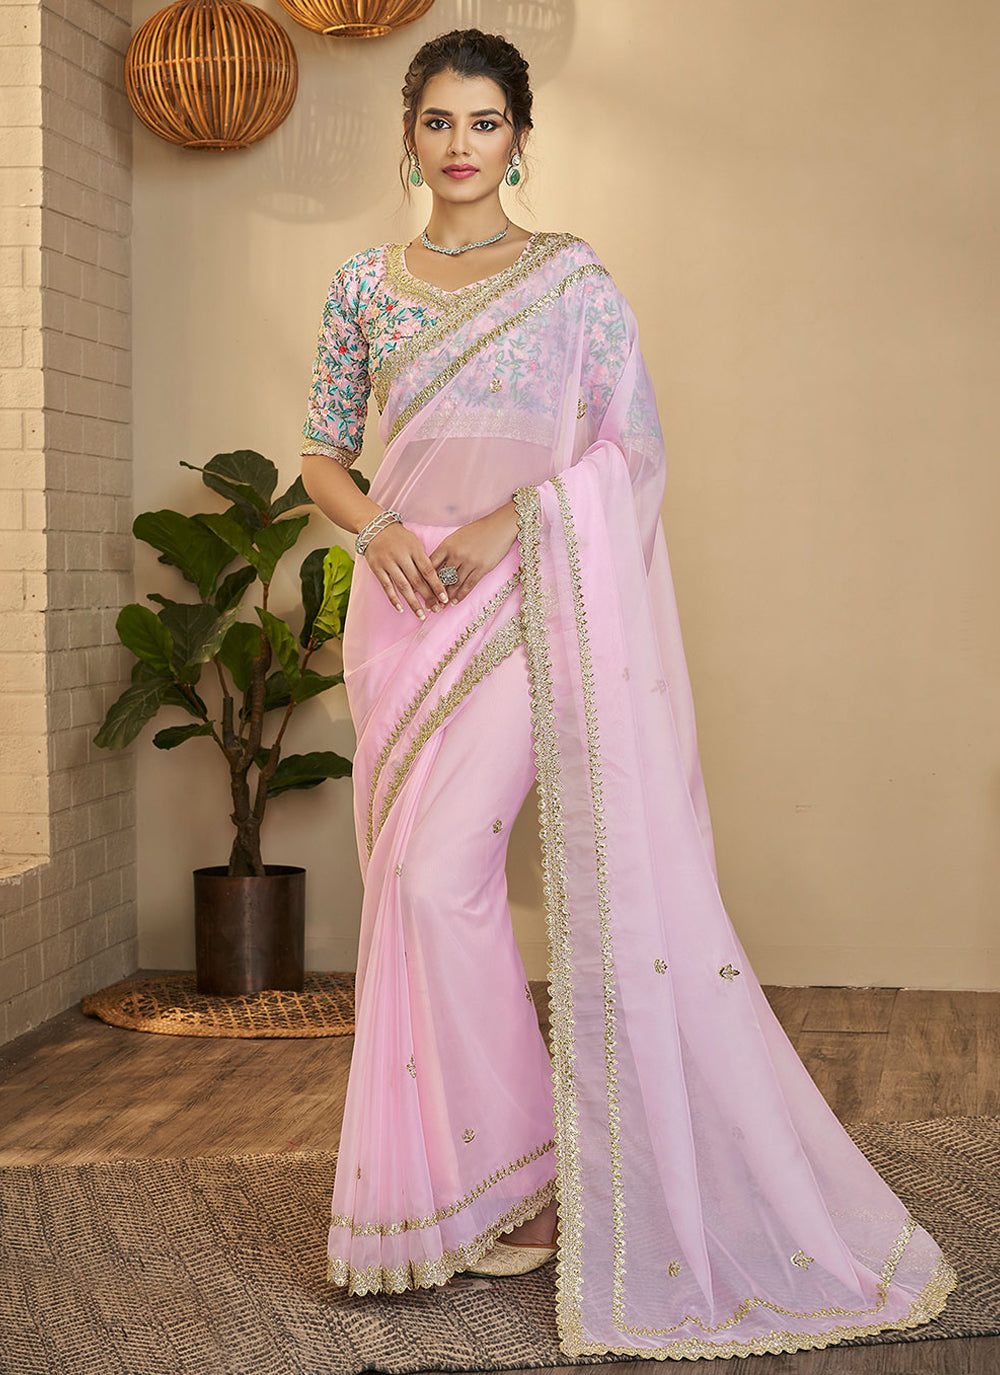 Shop Pink Organza Zari Saree Festive Wear Online at Best Price | Cbazaar